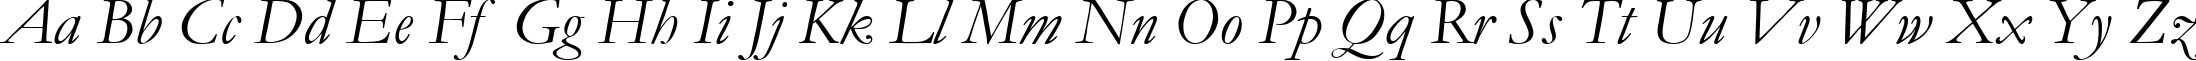 Пример написания английского алфавита шрифтом font254